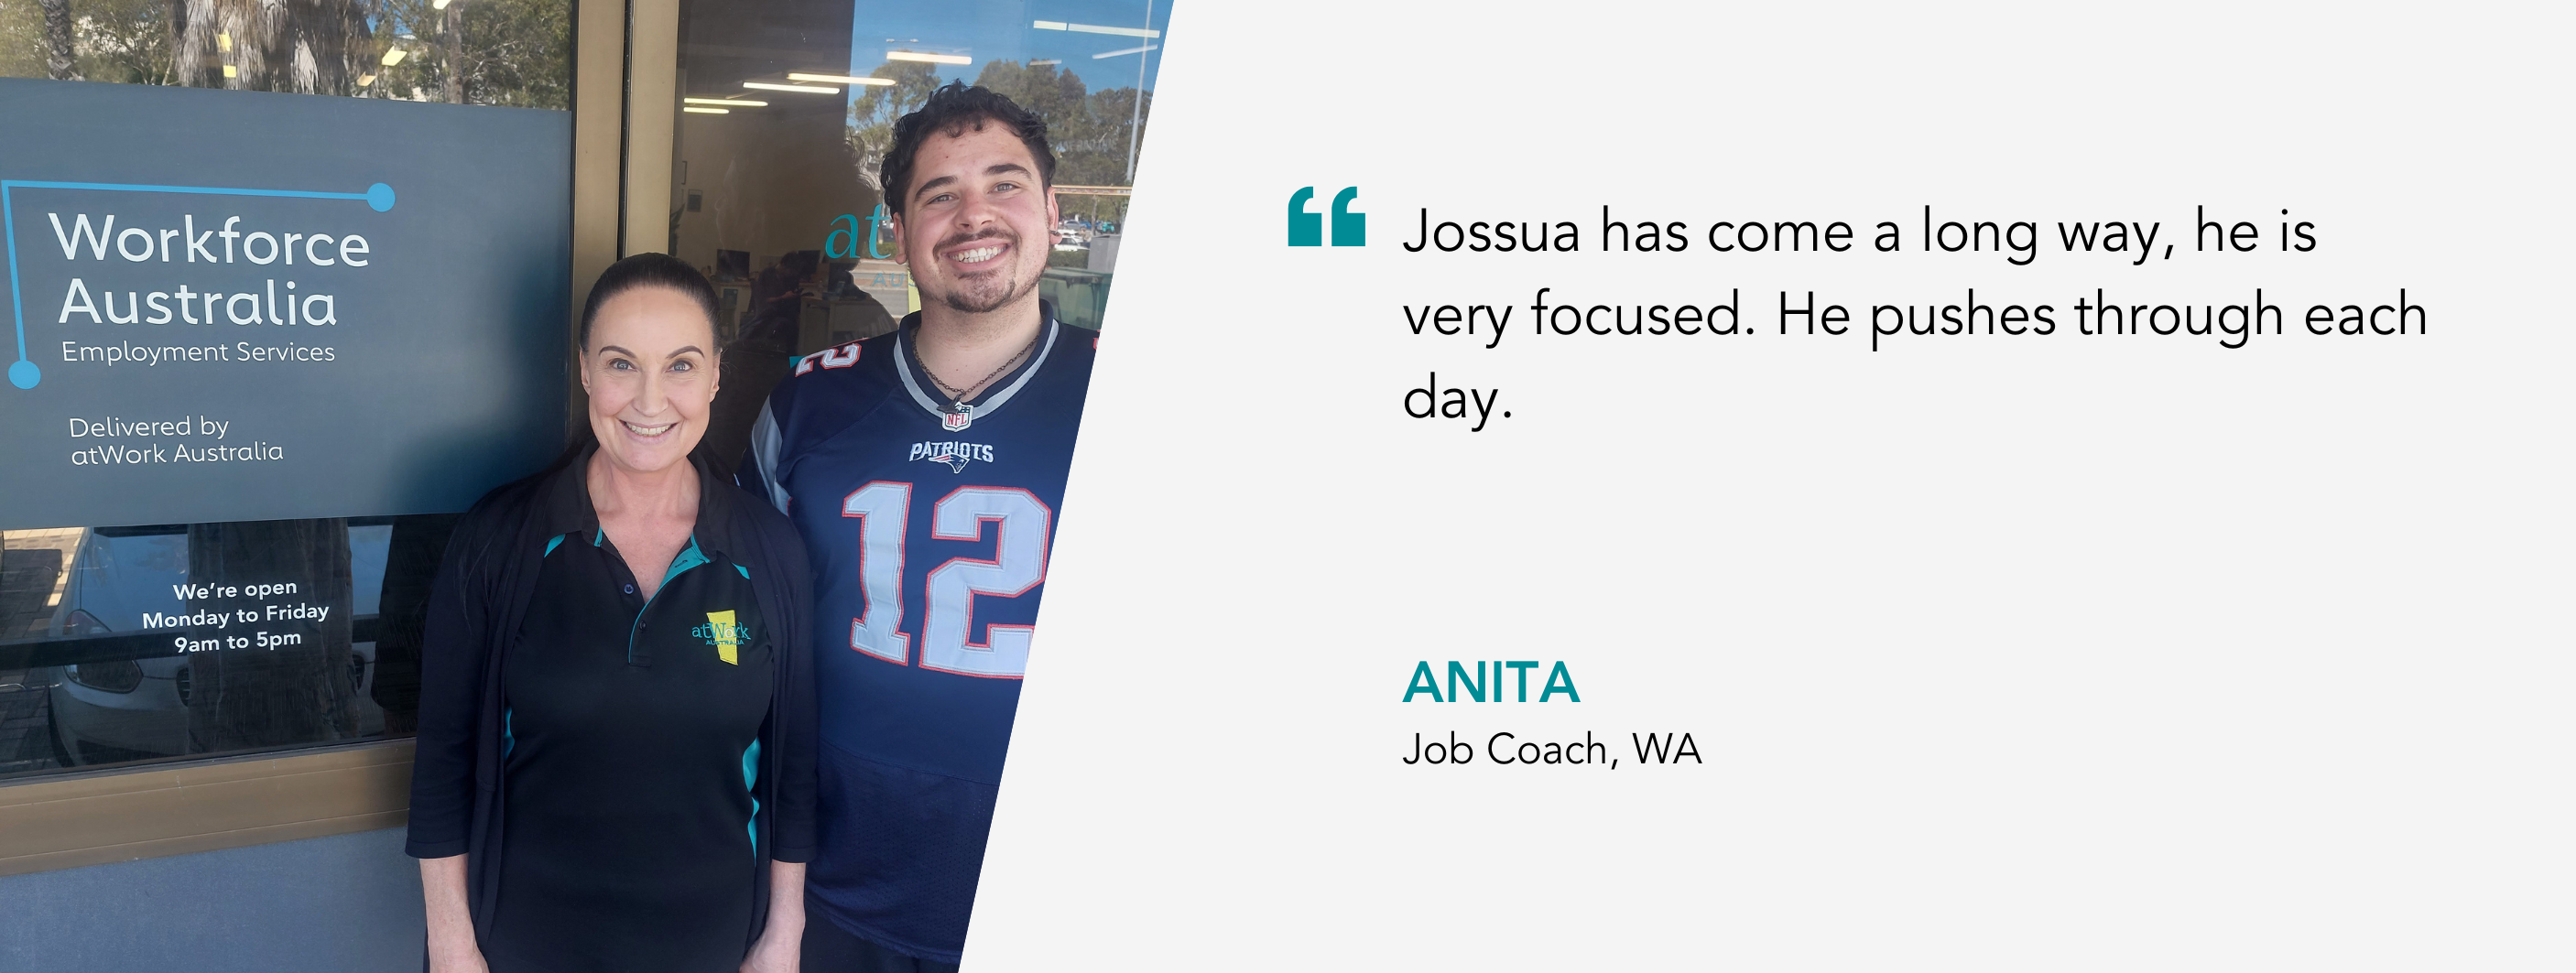 Jossua has come a long way, he is very focused. He pushes through each day. Anita, Job Coach, WA